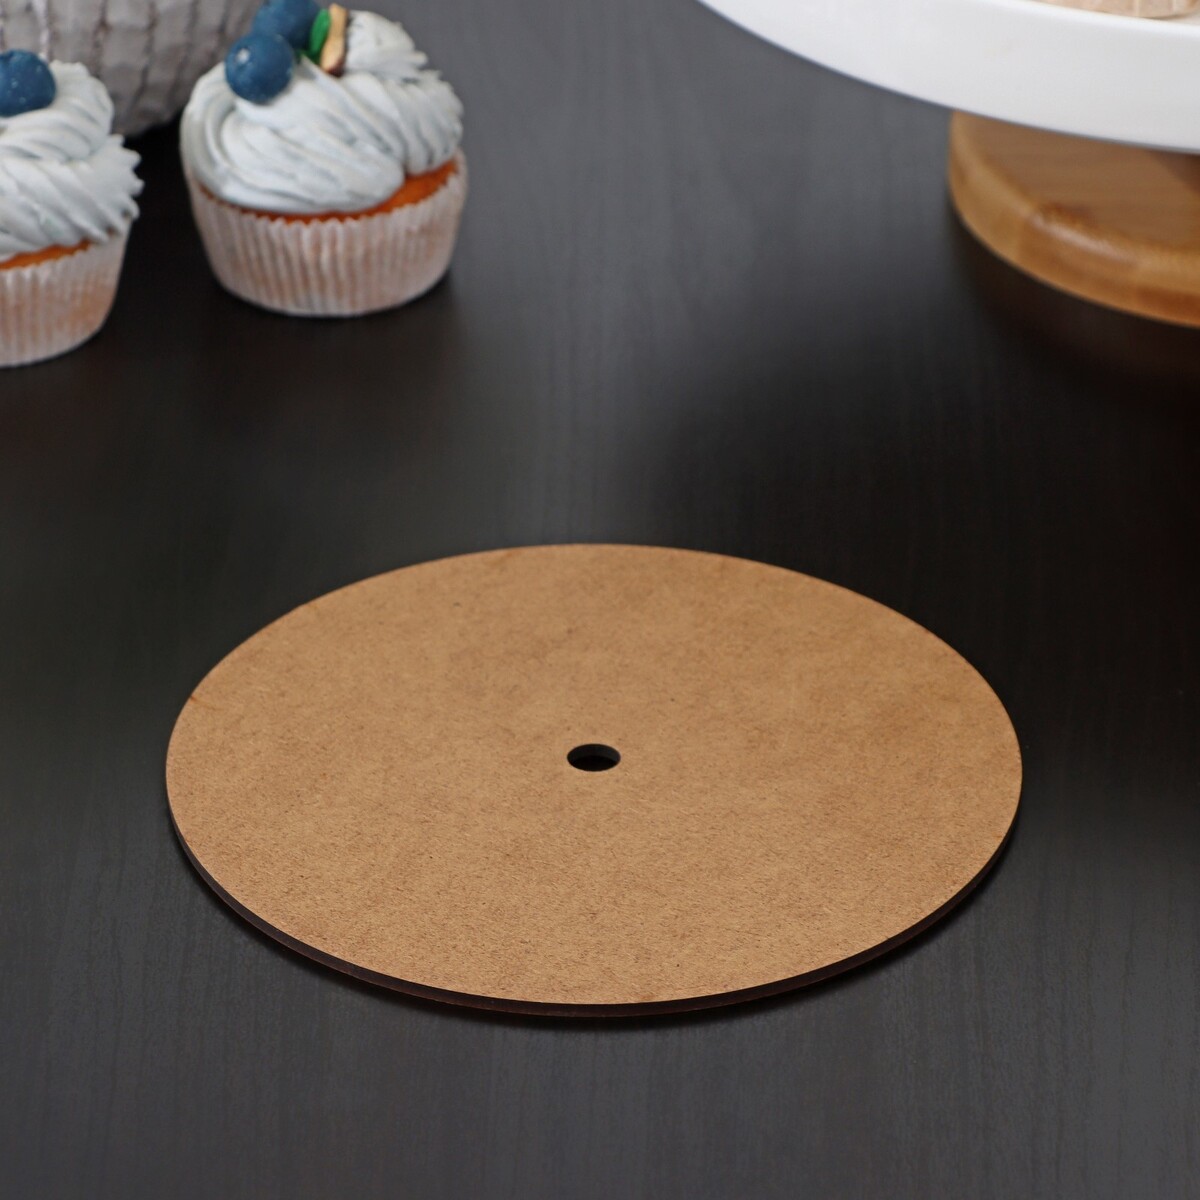 Подложка для торта с отверстием d=16 см, диаметр отверстия 1 см пресс для бургеров диаметр рабочей части 9 2 см